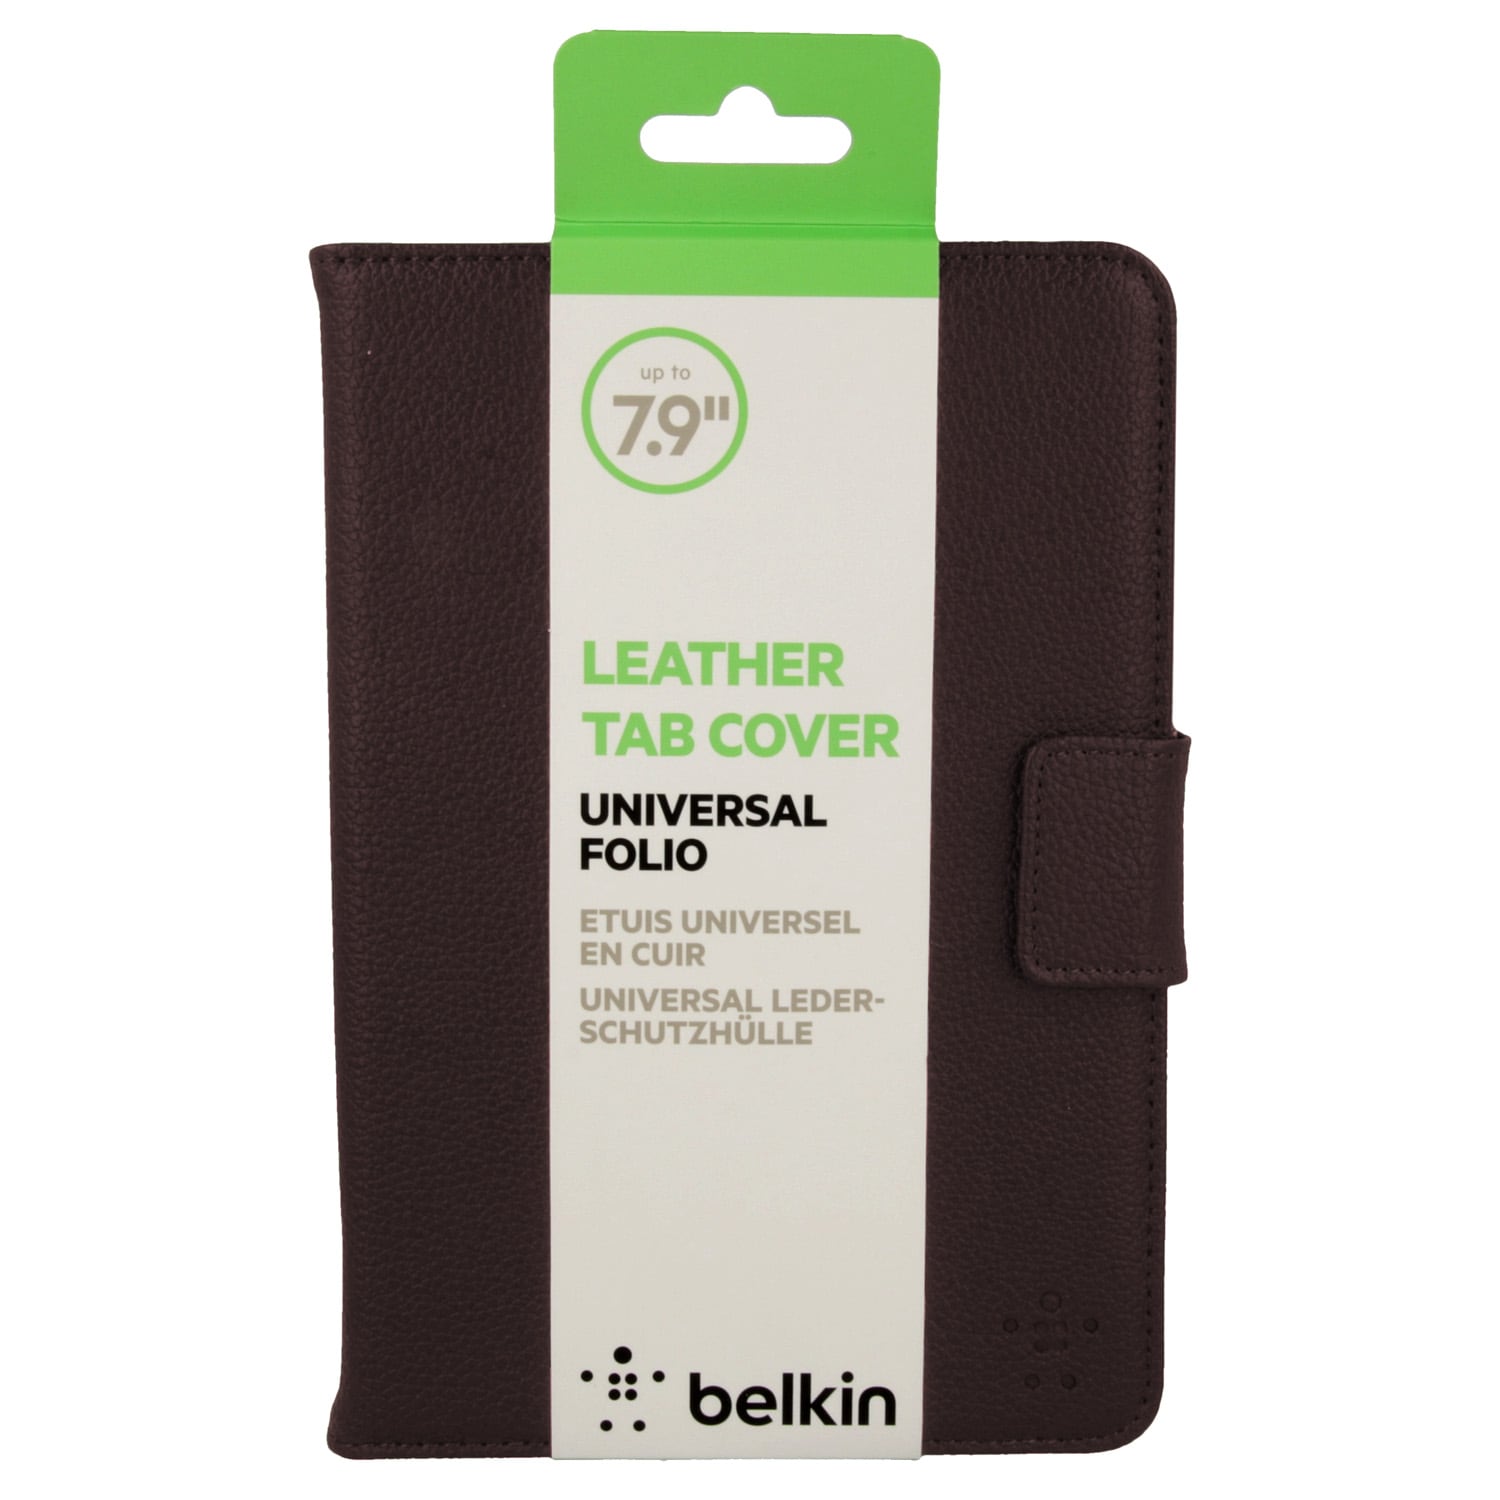 Belkin läder skal för Tablets upp till  7.9"